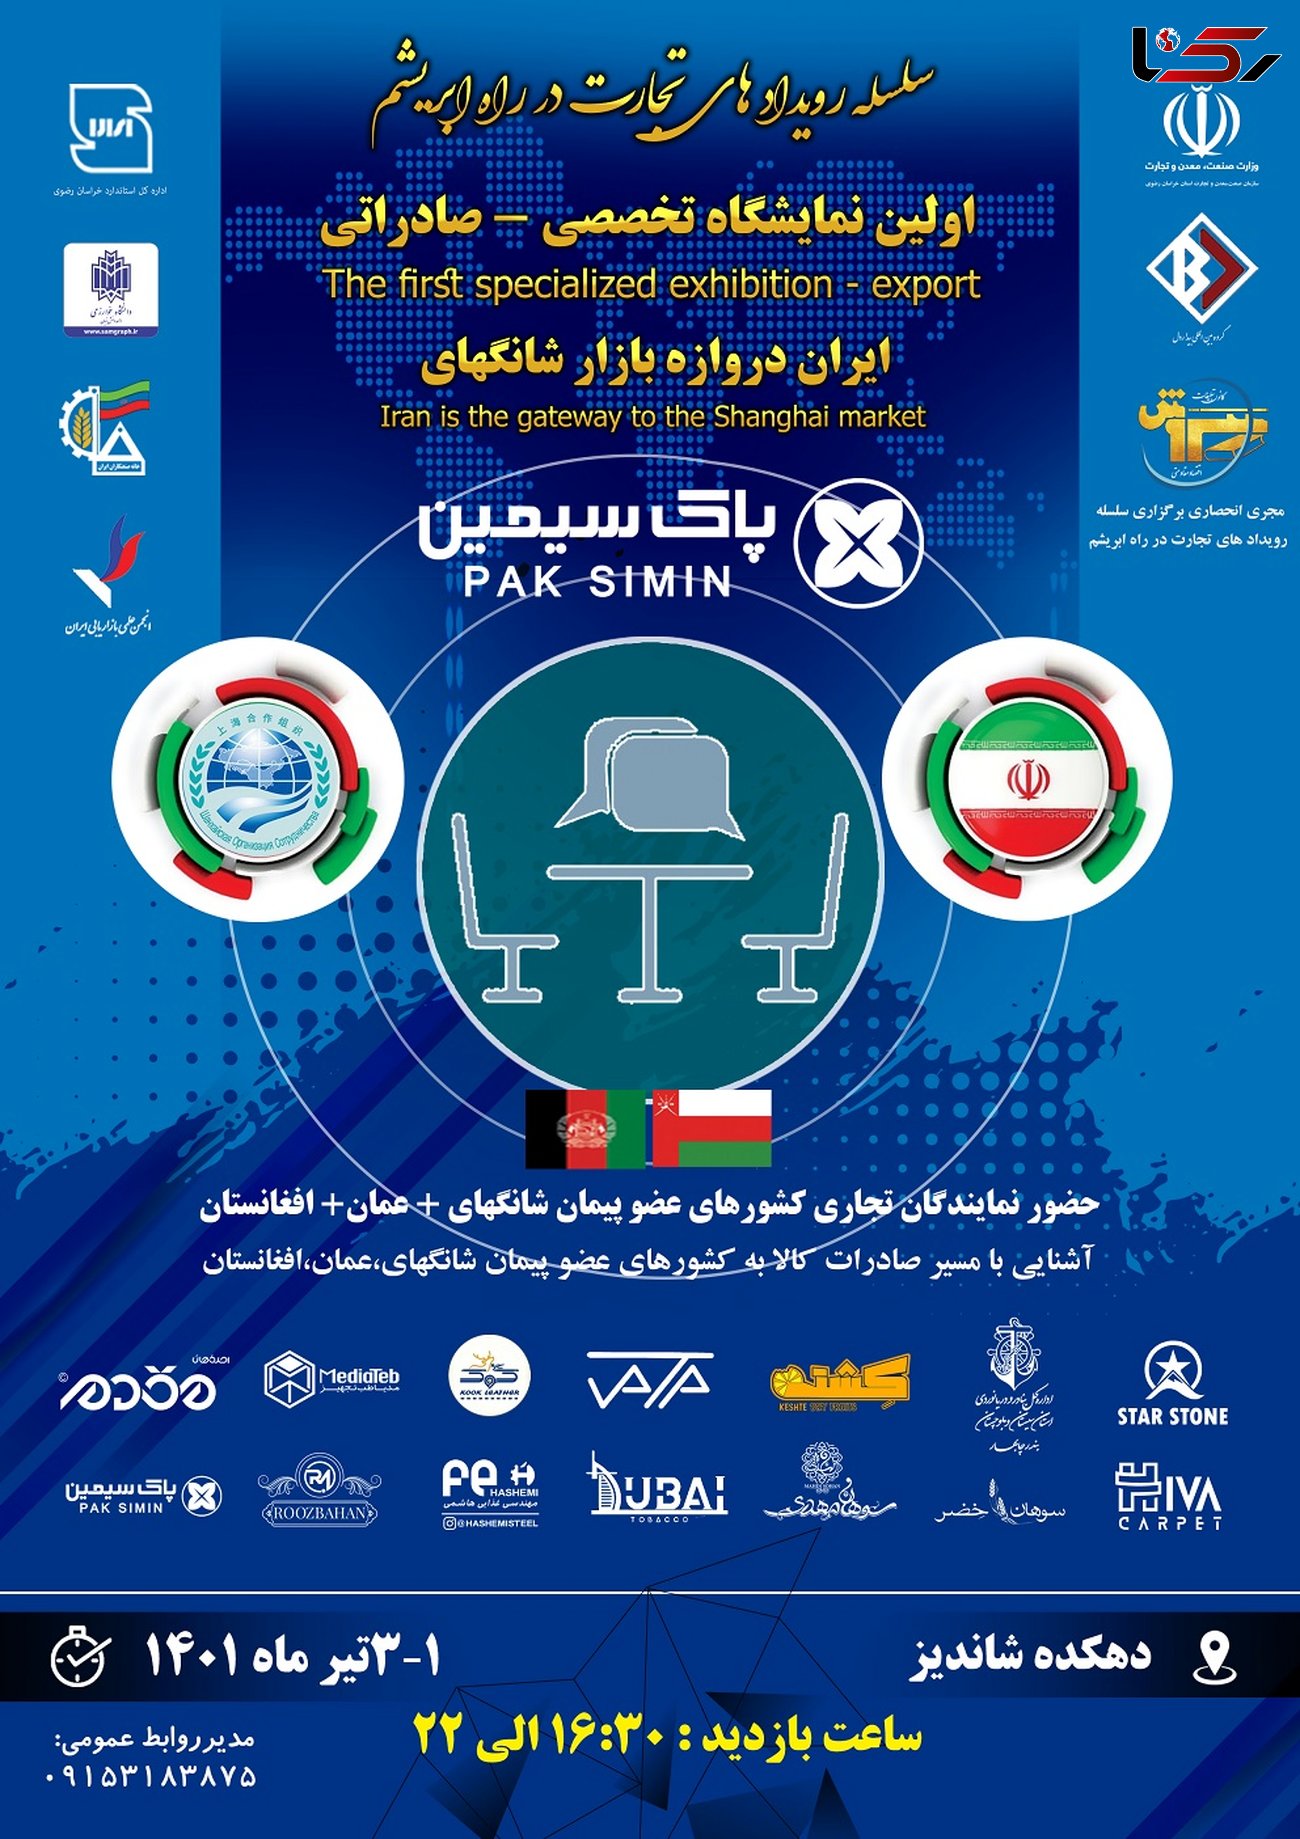 اولین نمایشگاه تخصصی صادراتی ایران دروازه بازار شانگهای در مشهد برگزار می گردد